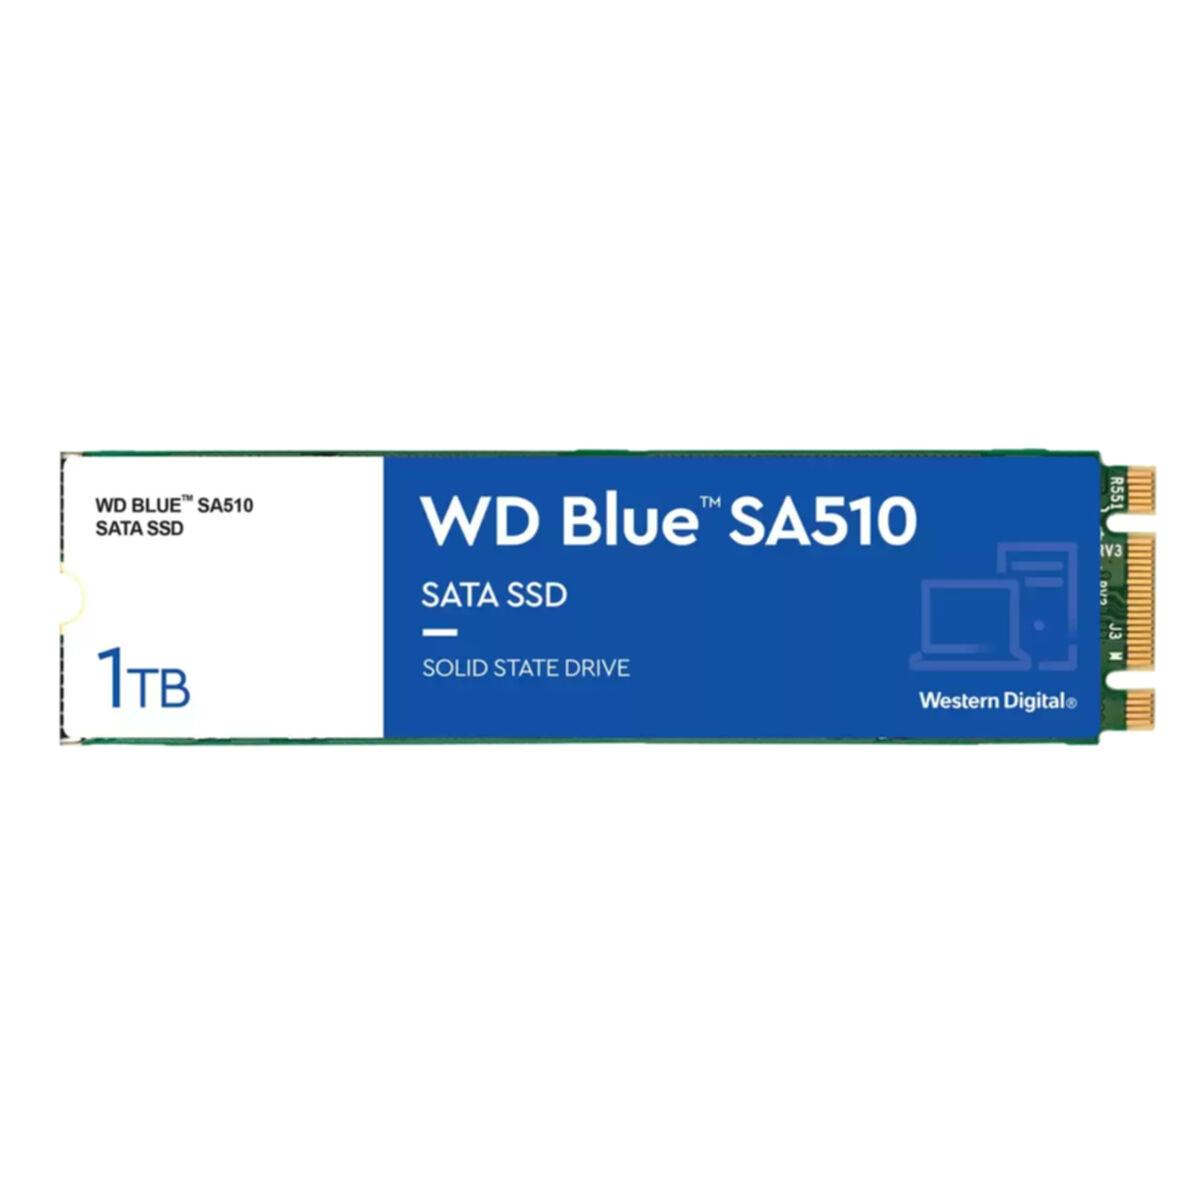 GB, SSD, 1000 DIGITAL SA510, WESTERN intern